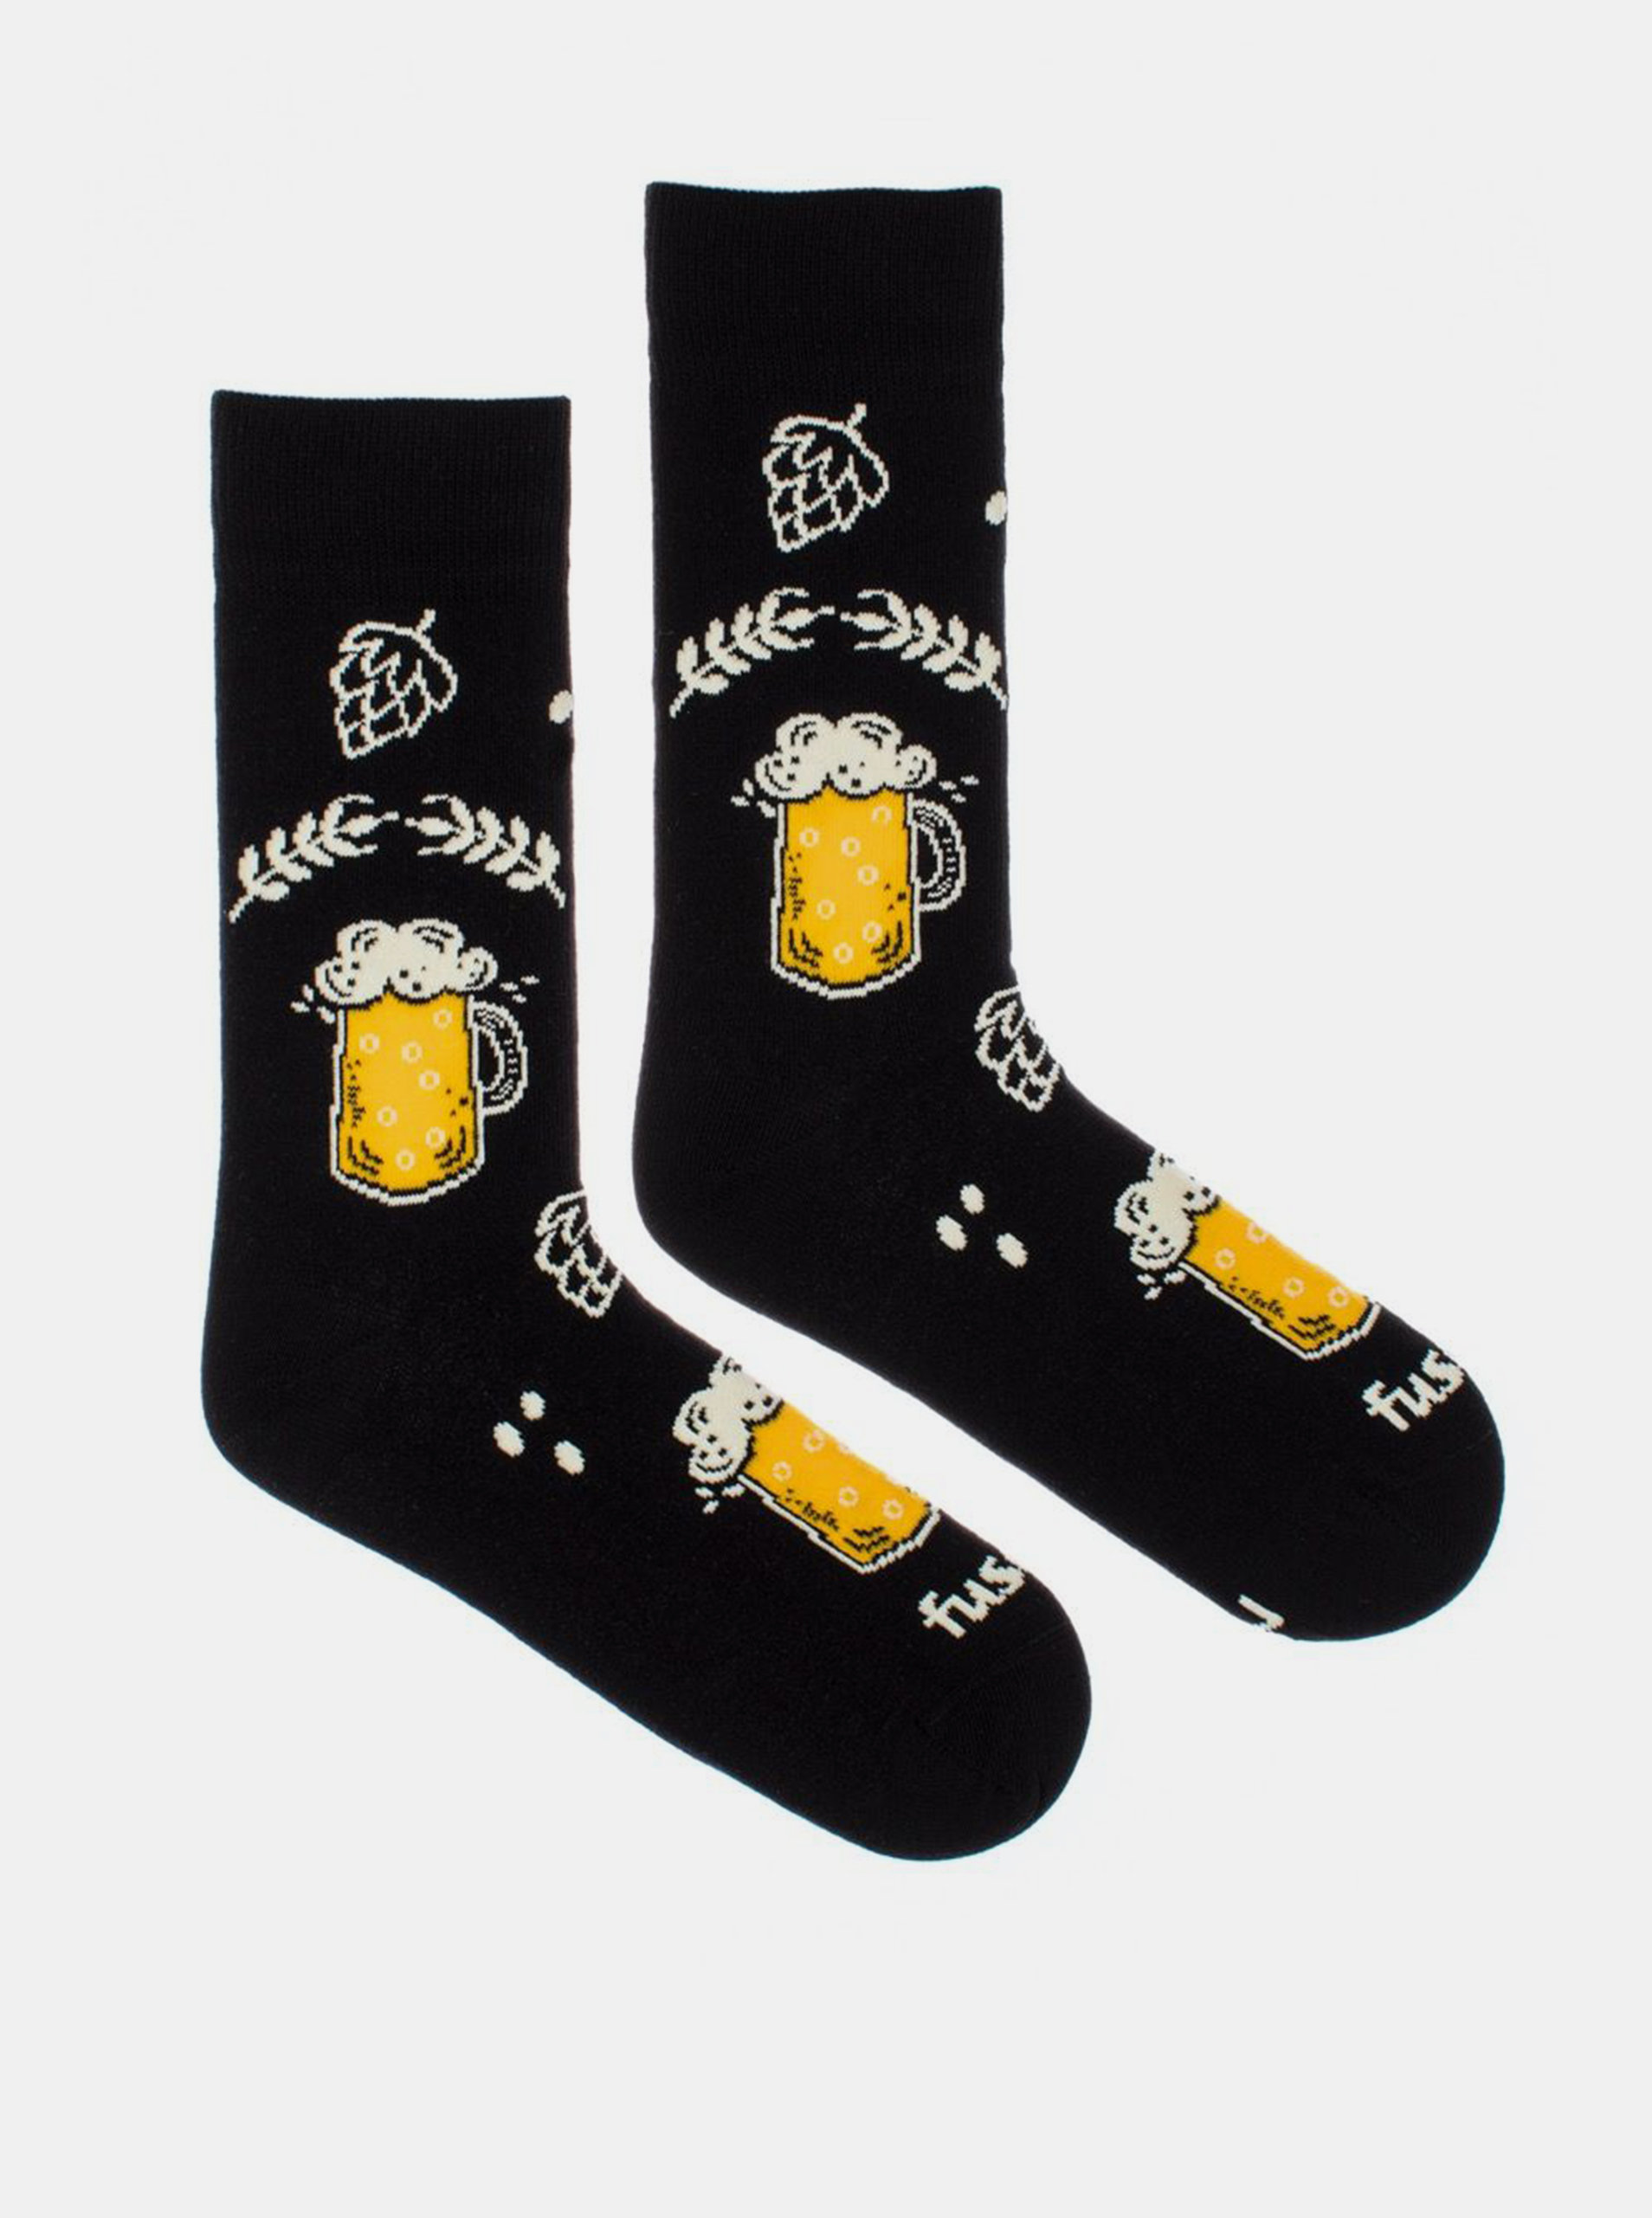 Černé vzorované ponožky Fusakle Chmelová brigáda